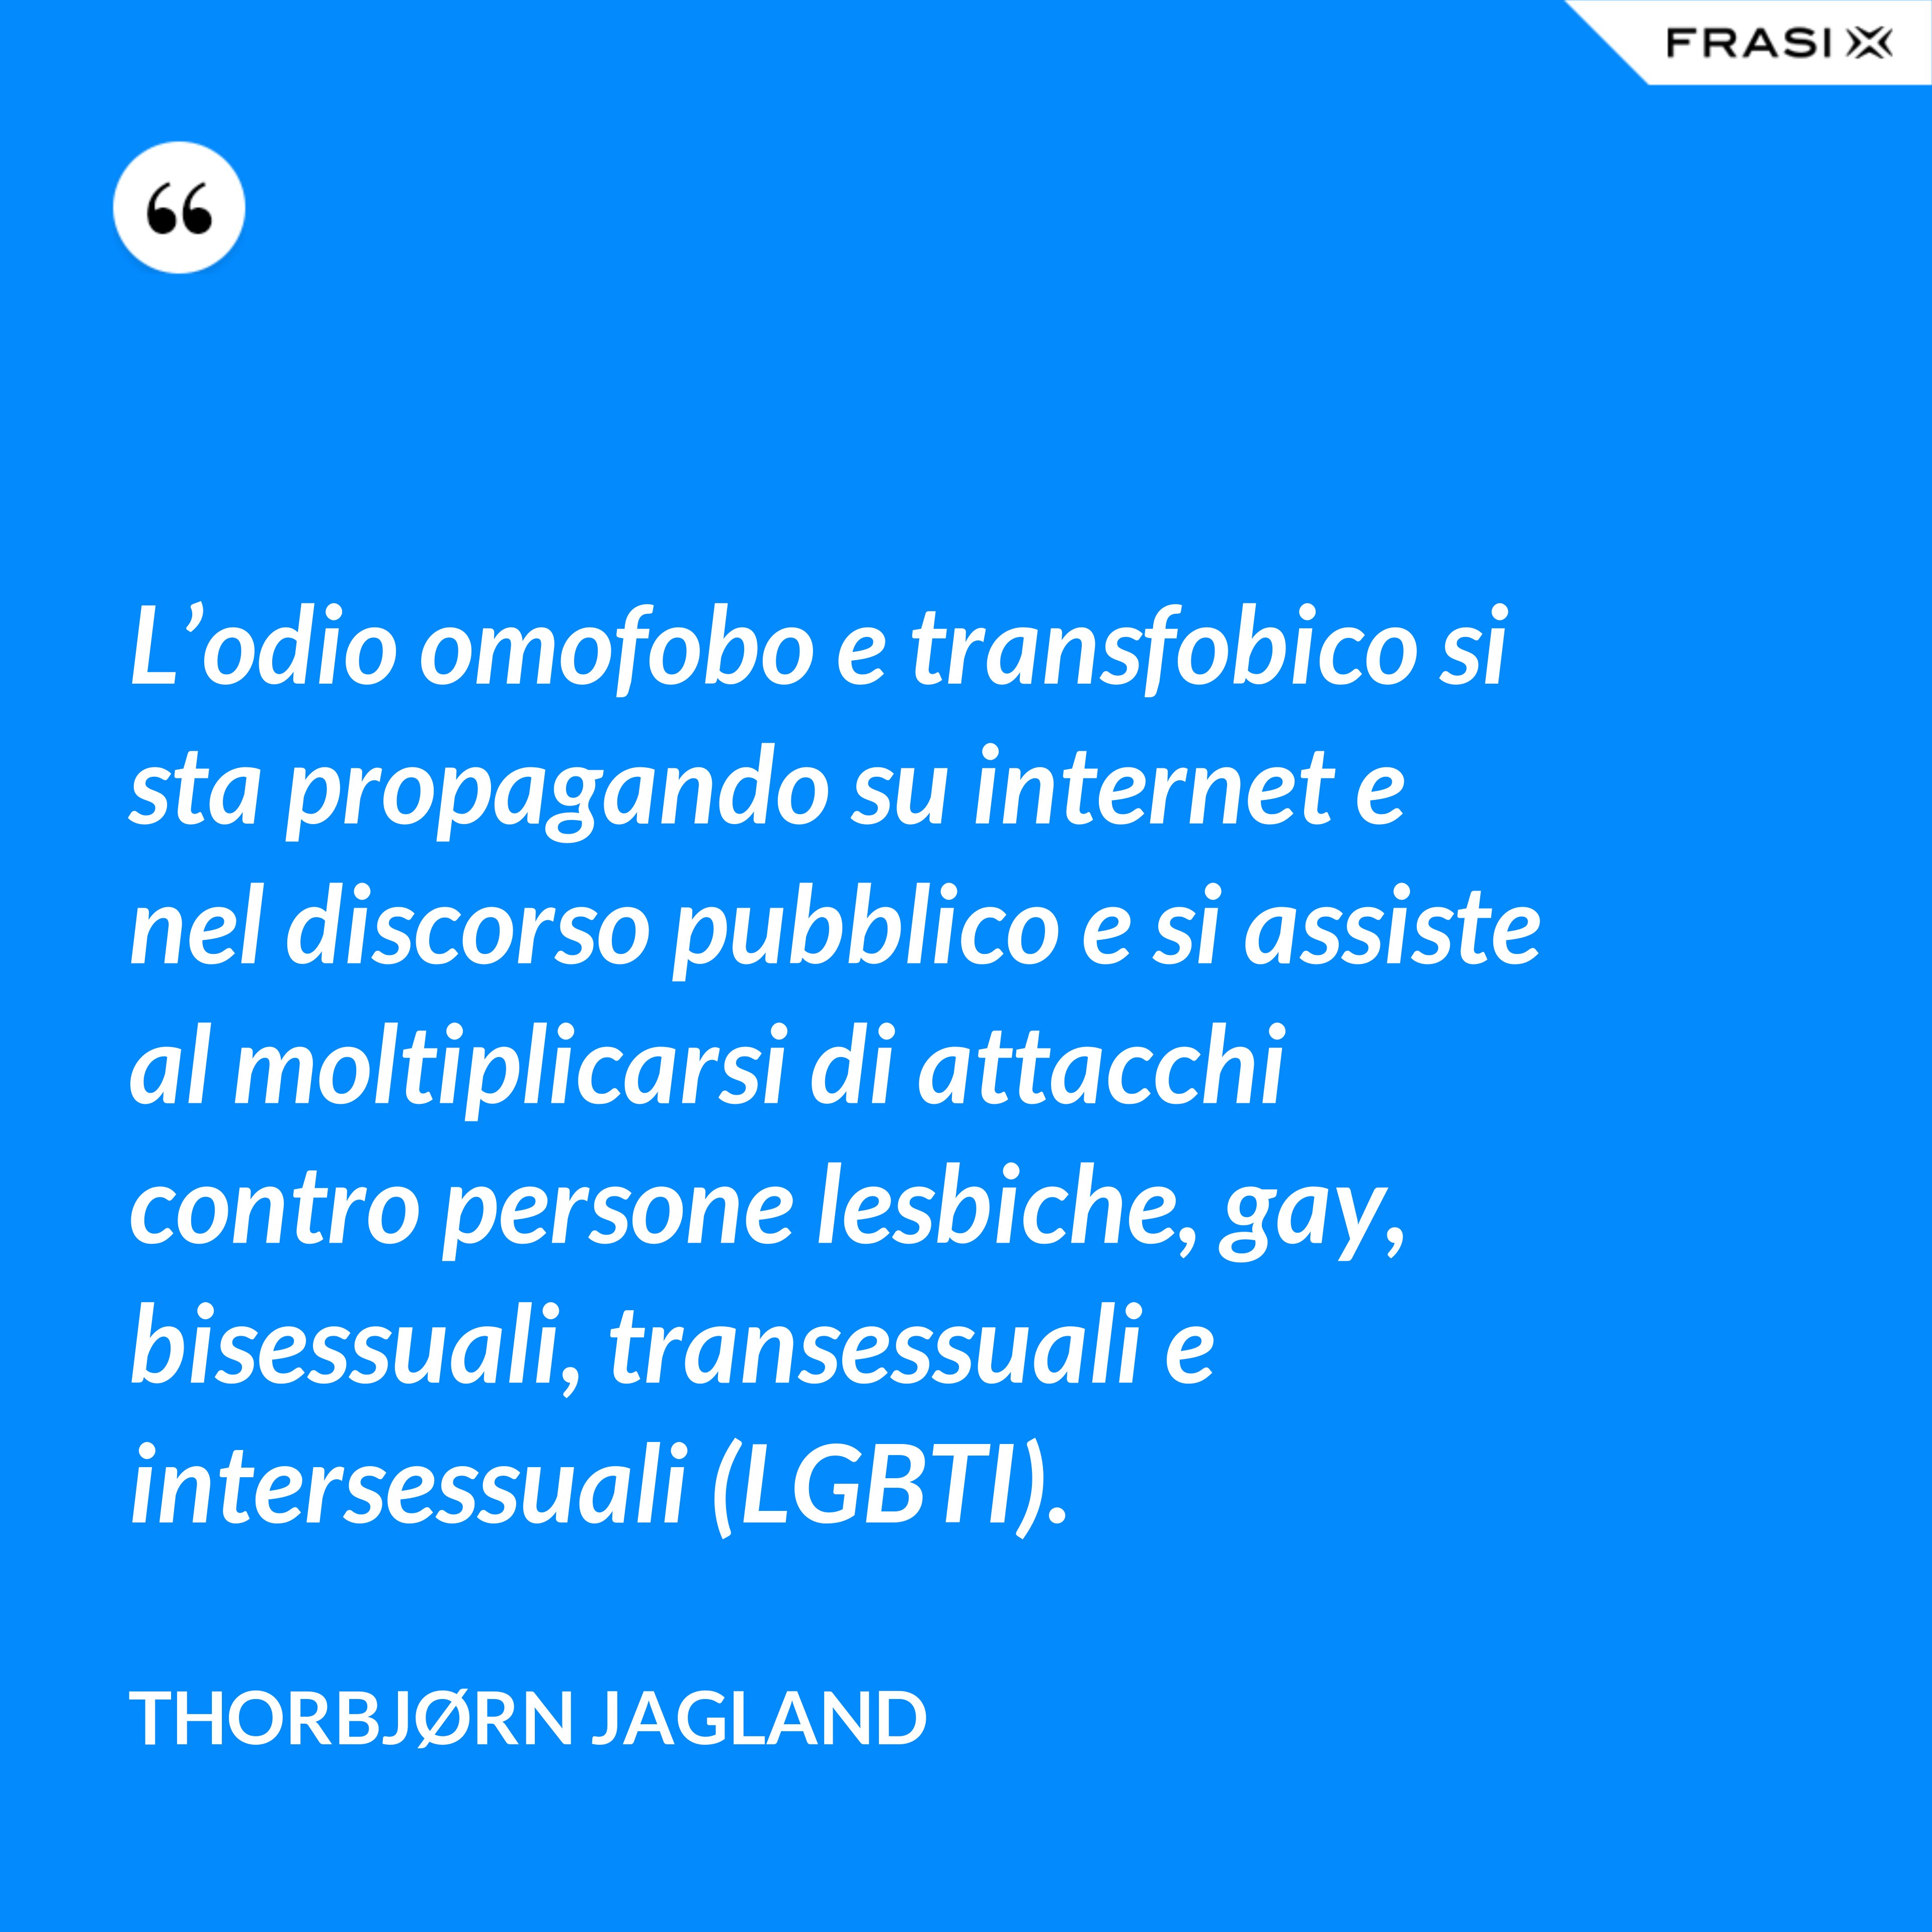 L’odio omofobo e transfobico si sta propagando su internet e nel discorso pubblico e si assiste al moltiplicarsi di attacchi contro persone lesbiche, gay, bisessuali, transessuali e intersessuali (LGBTI). - Thorbjørn Jagland